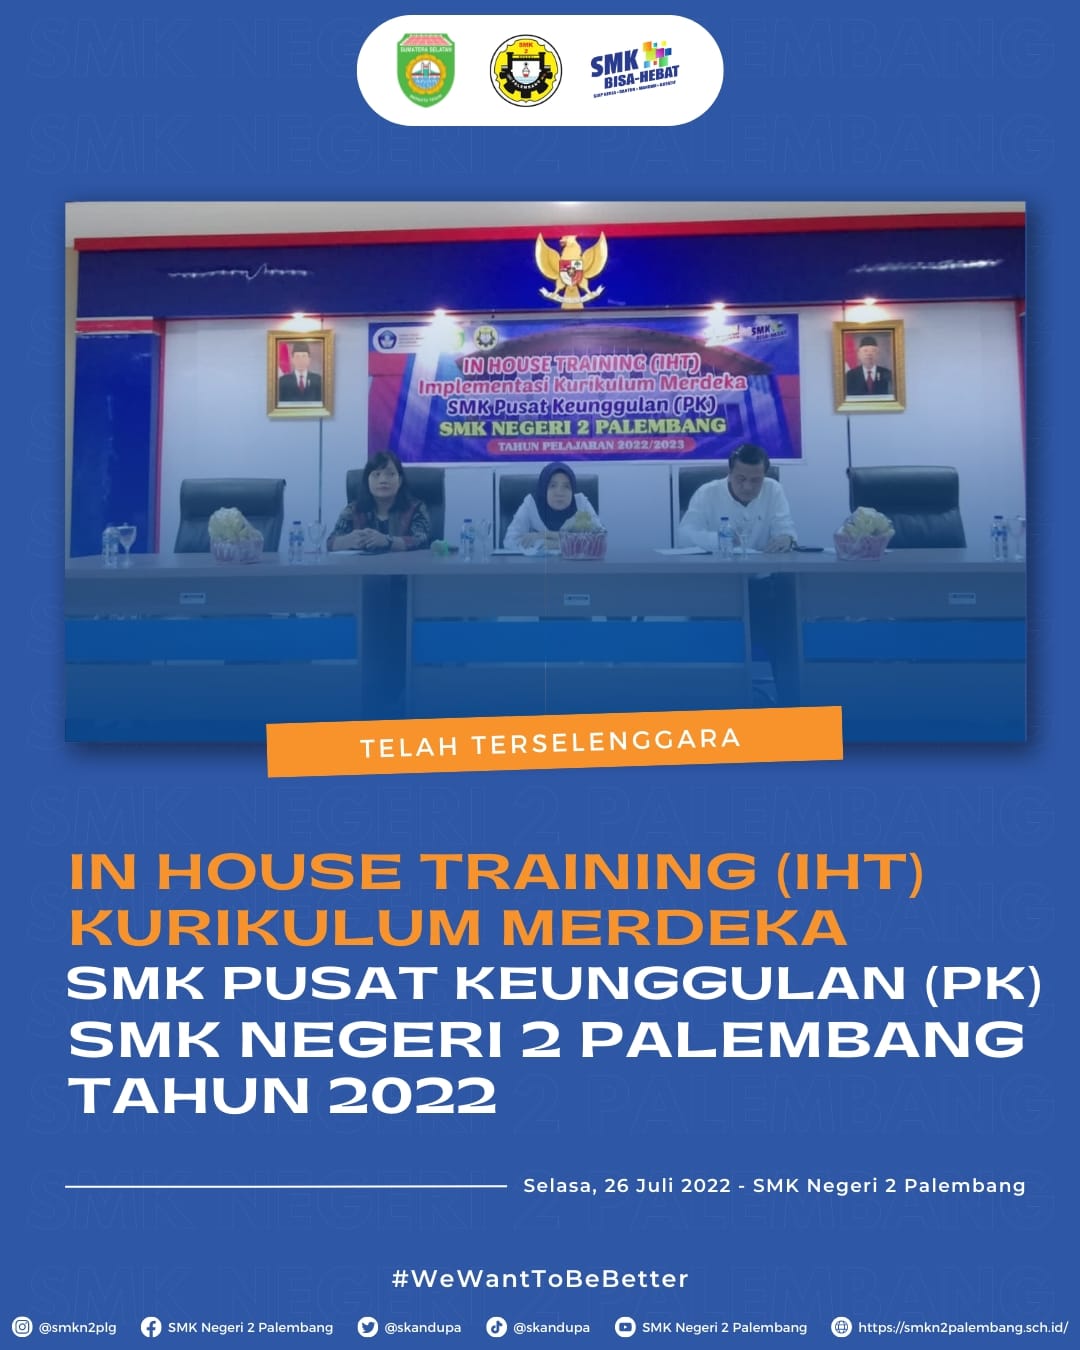 In House Training (IHT) Kurikulum Merdeka SMK Pusat Keunggulan (PK) di SMK Negeri 2 Palembang